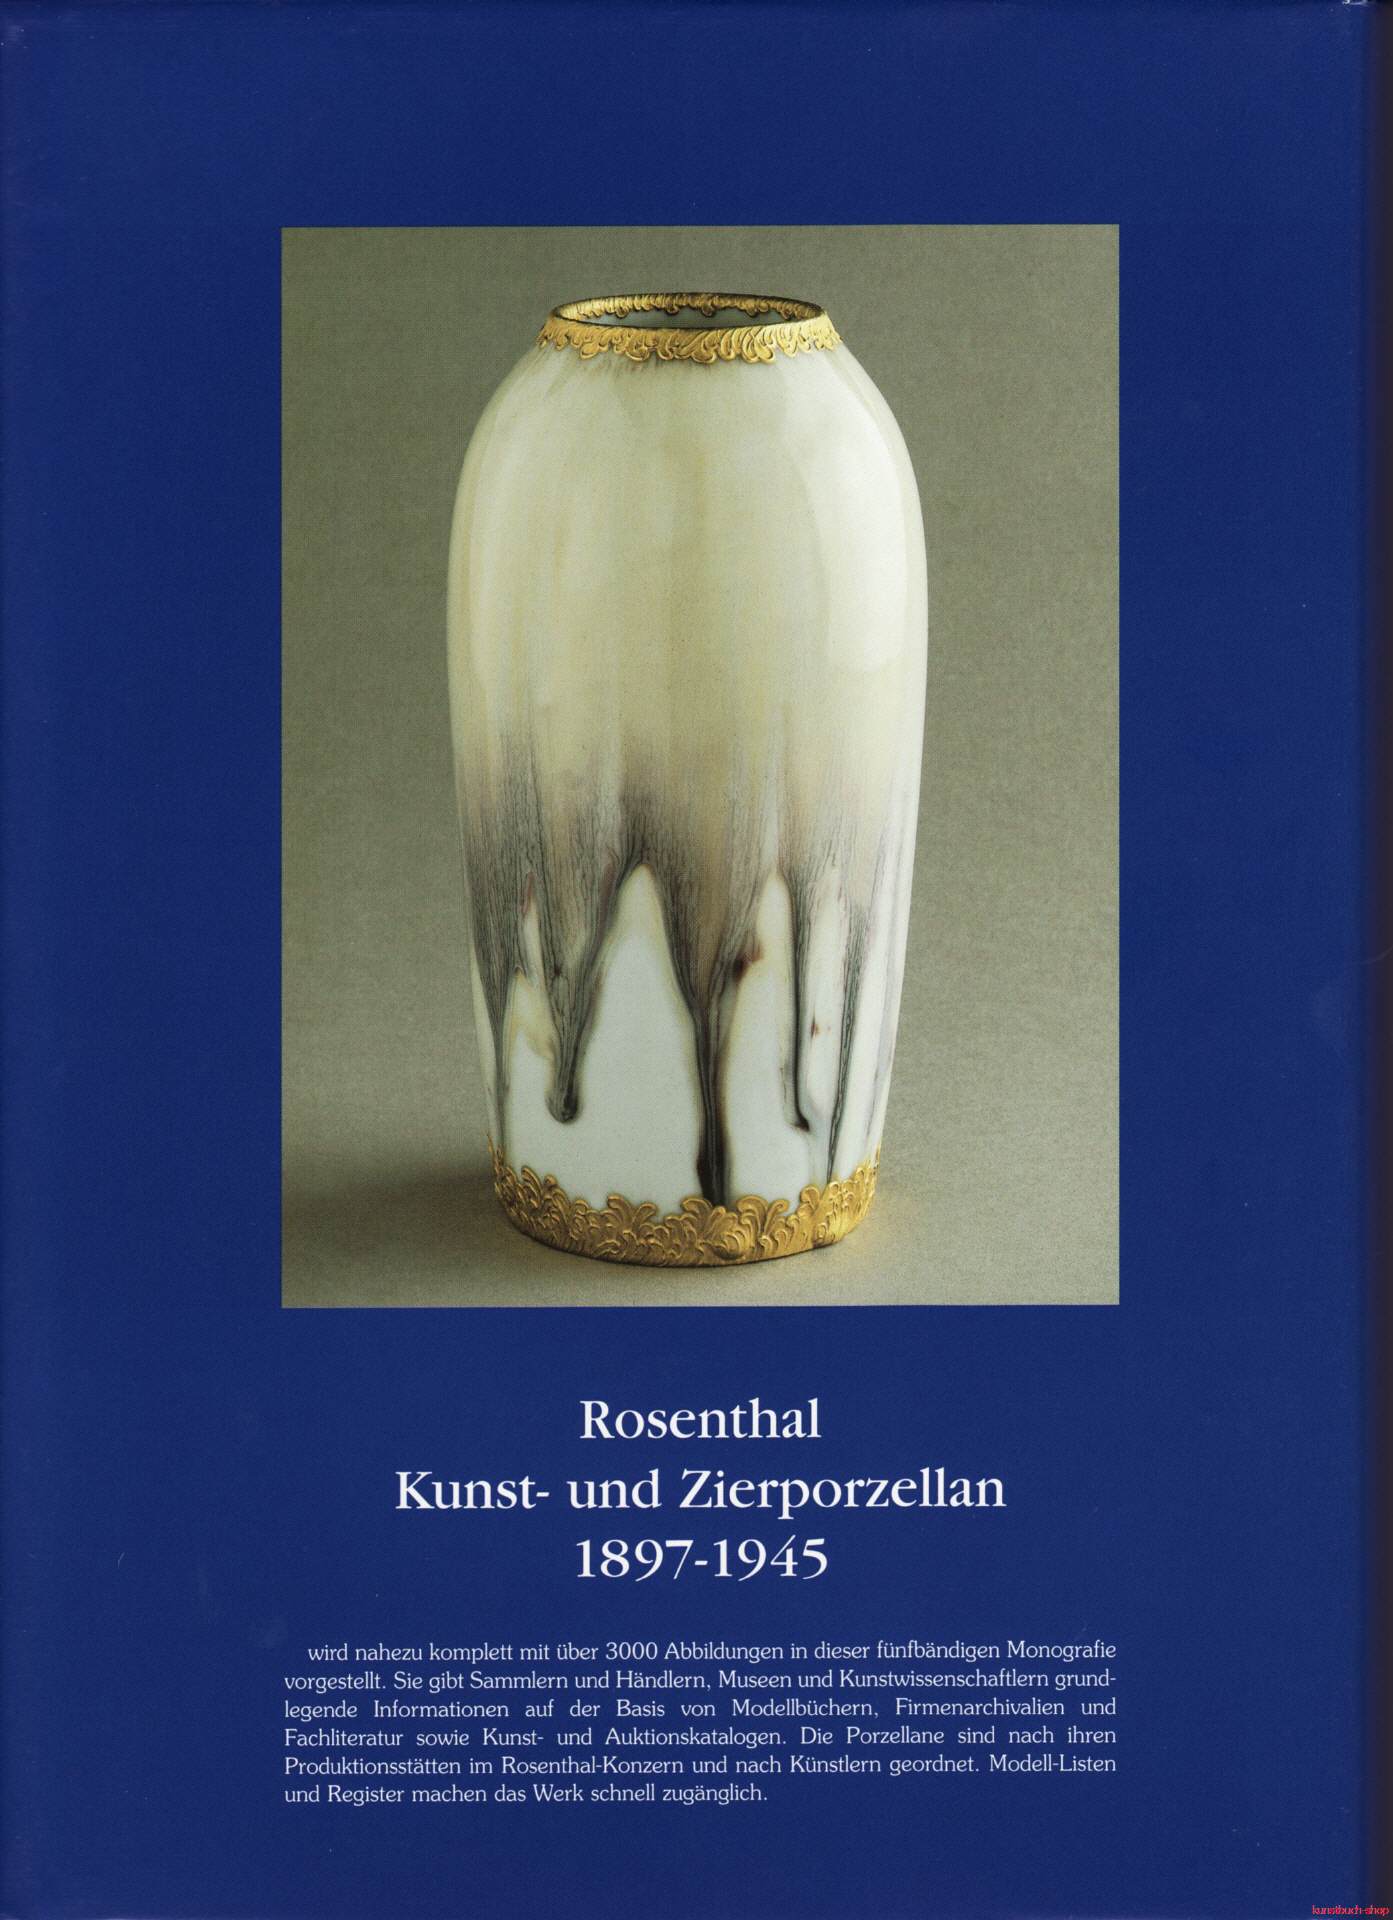 Rosenthal, Kunst- und Zierporzellan 1897-1945 / Rosenthal - Kunst und Zierporzellan 1897-1945. Band 1